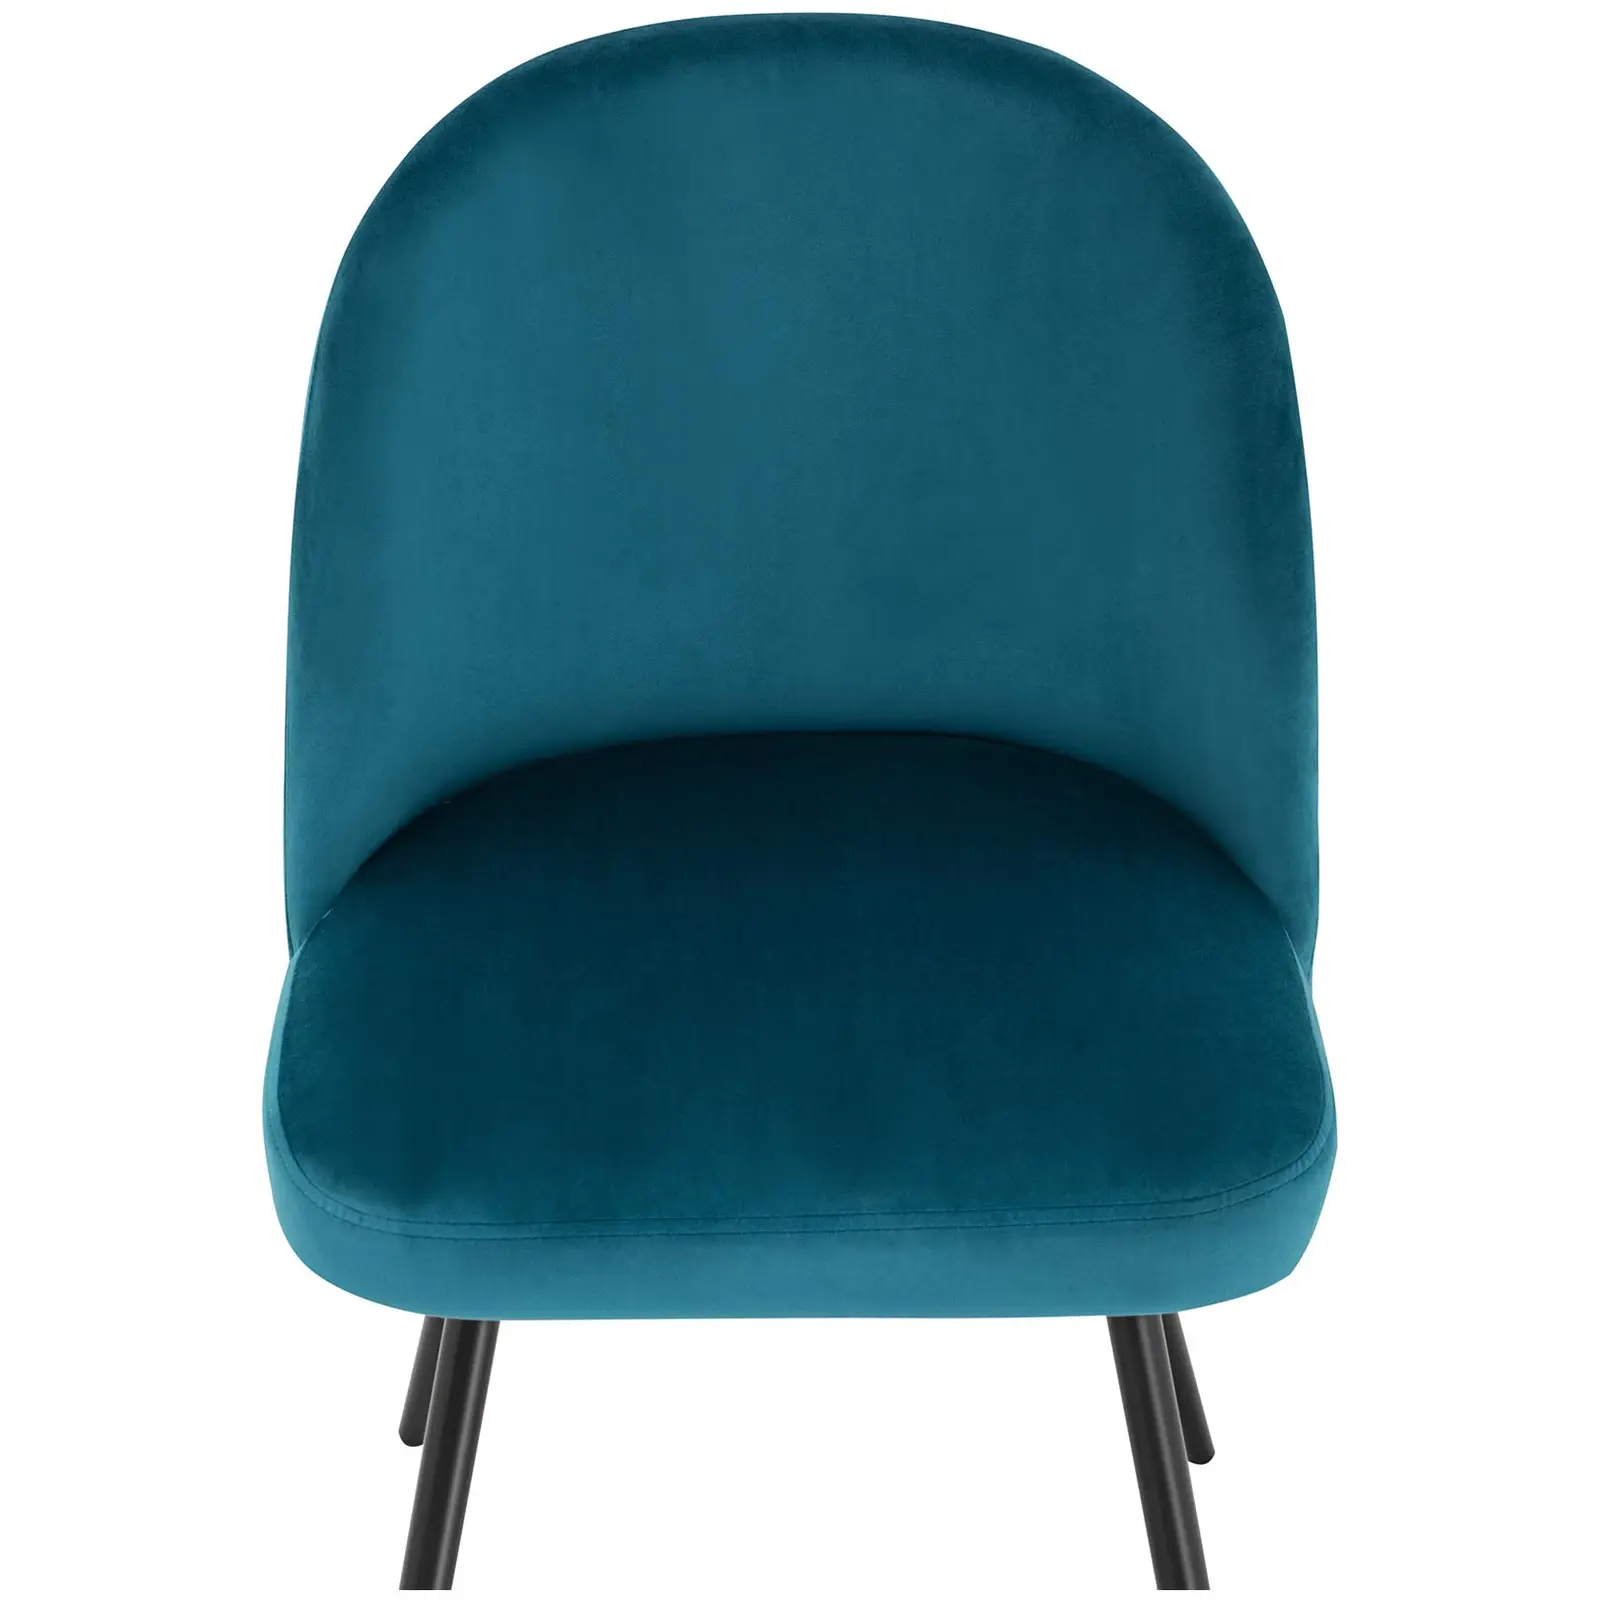 Chaise en tissu - Lot de 2 - 150 kg max. - Surface d'assise de 48 x 41,5 cm - Coloris turquoise